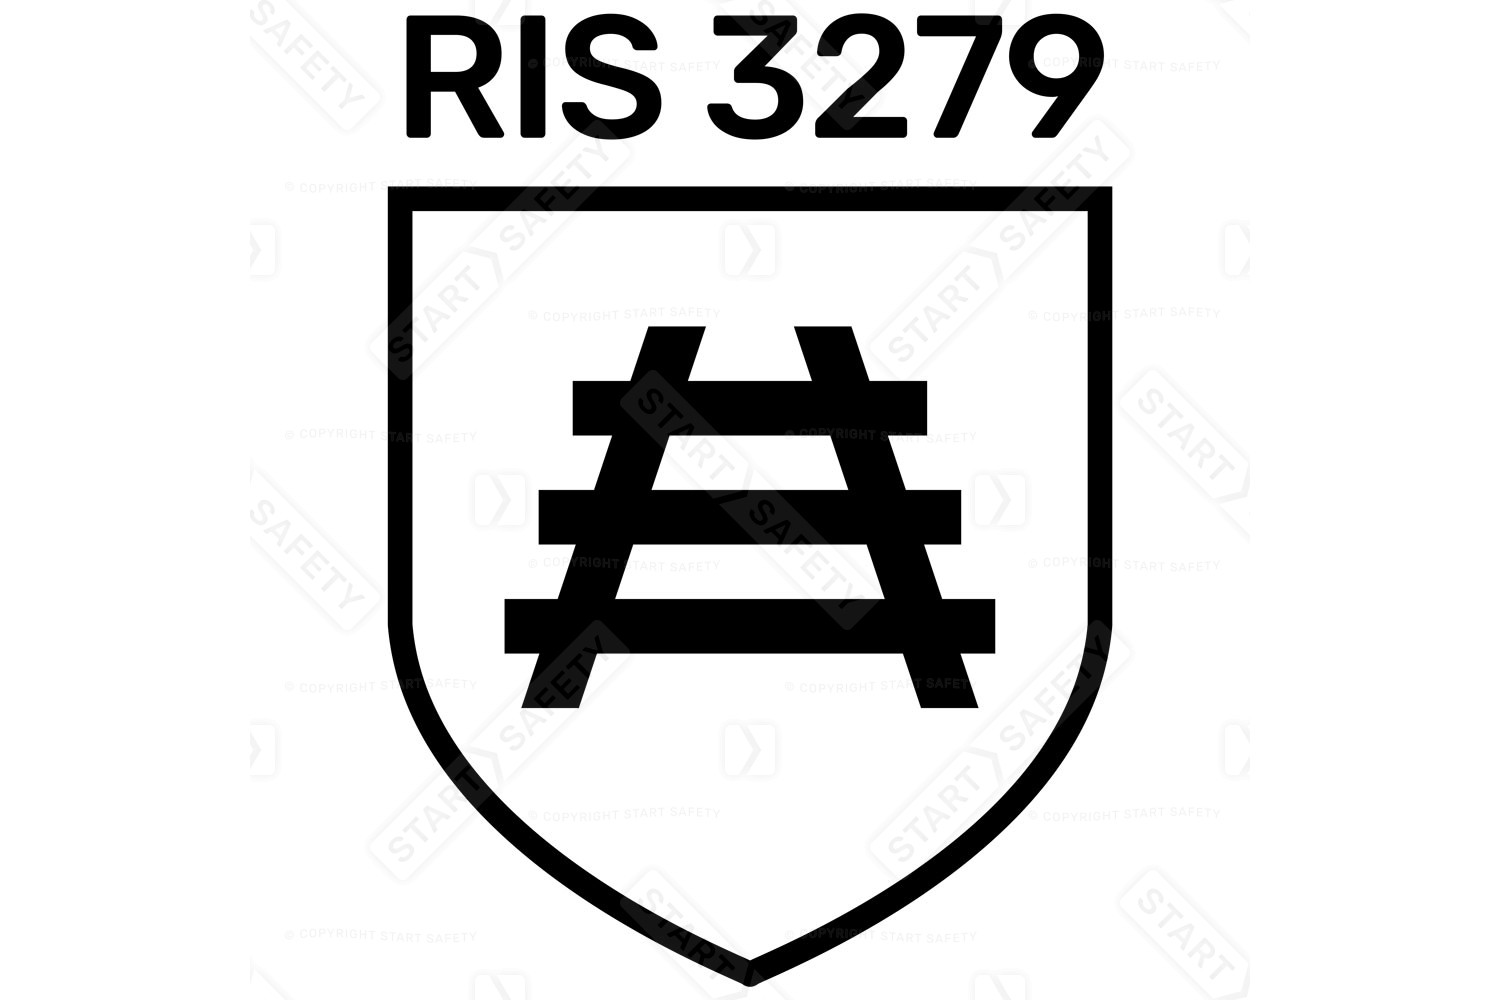 RIS 3279 Rail Working Standard